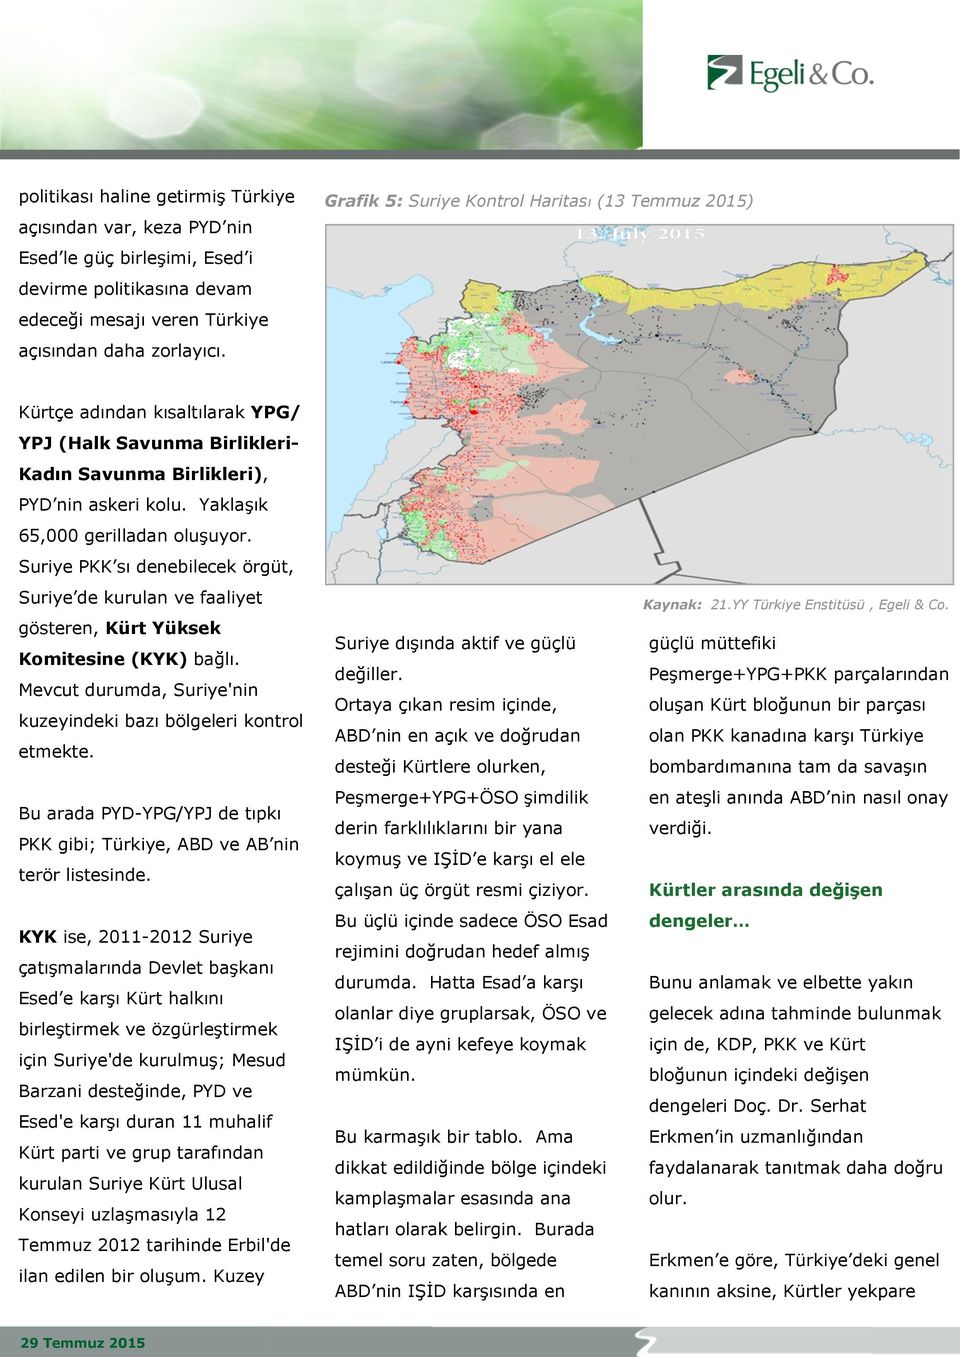 Suriye PKK sı denebilecek örgüt, Suriye de kurulan ve faaliyet gösteren, Kürt Yüksek Komitesine (KYK) bağlı. Mevcut durumda, Suriye'nin kuzeyindeki bazı bölgeleri kontrol etmekte.